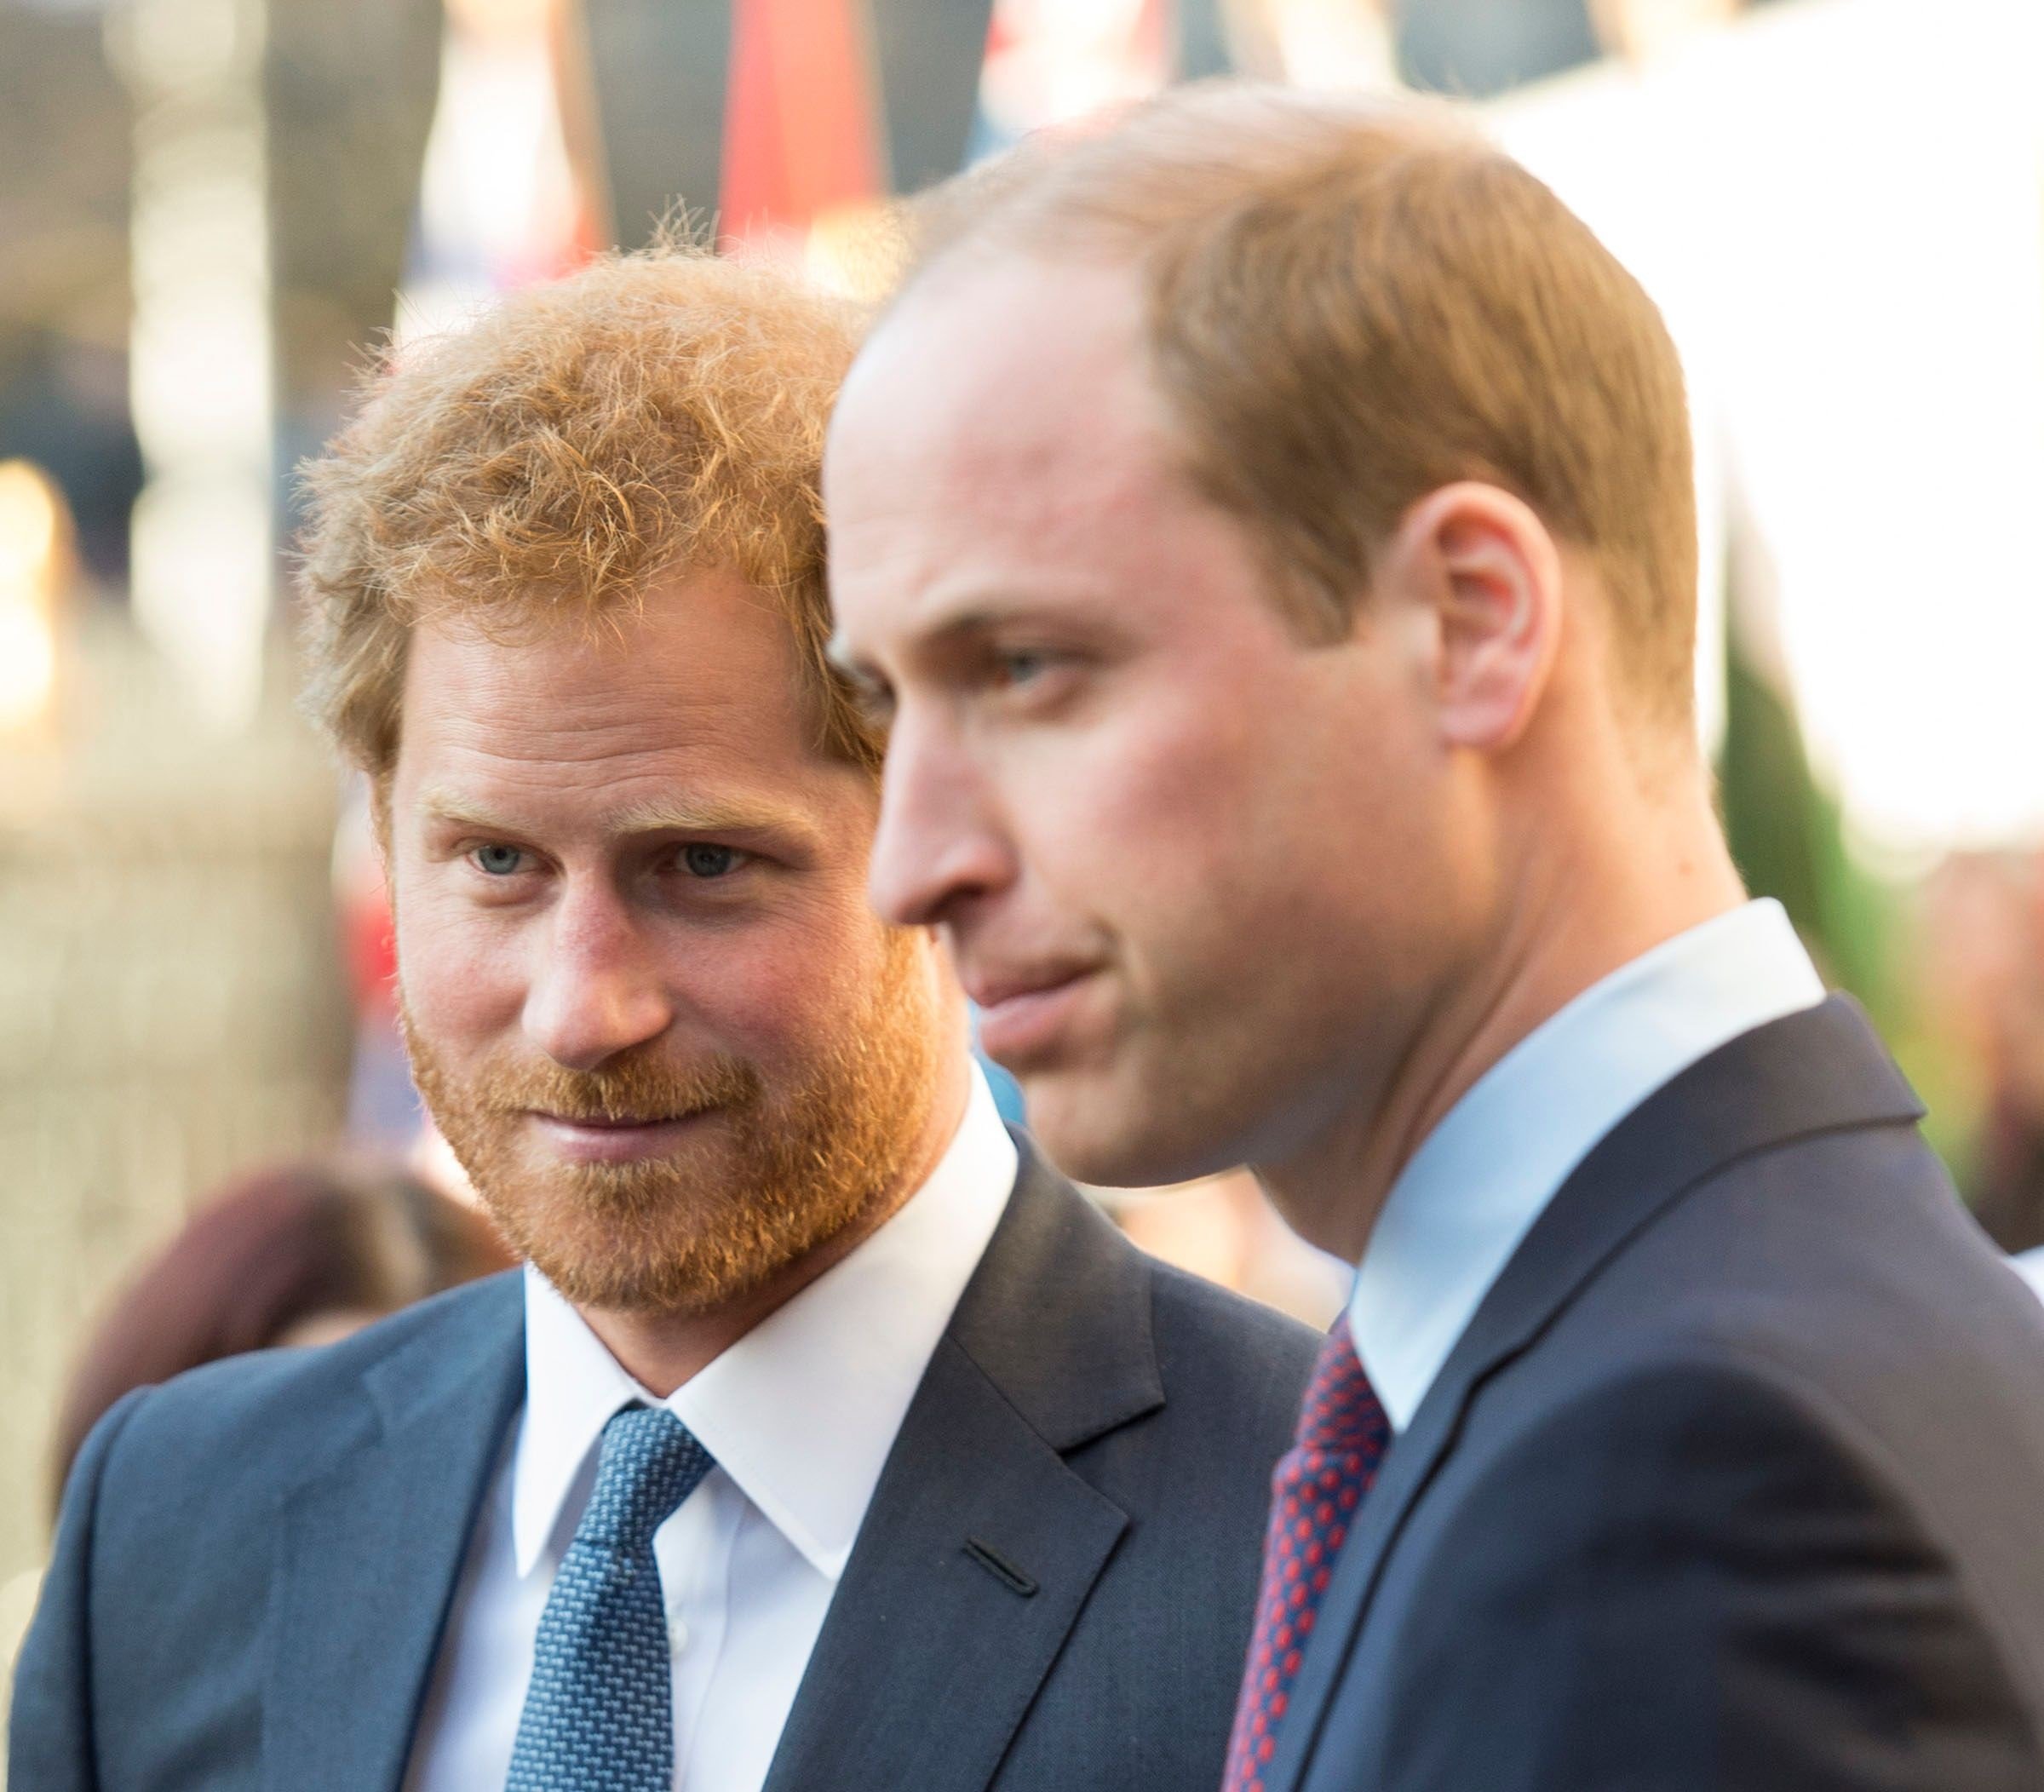 El príncipe William y el príncipe Harry en el Servicio del Día de Observancia de la Commonwealth, el 14 de marzo de 2016 en Londres, Reino Unido. | Foto: Getty Images